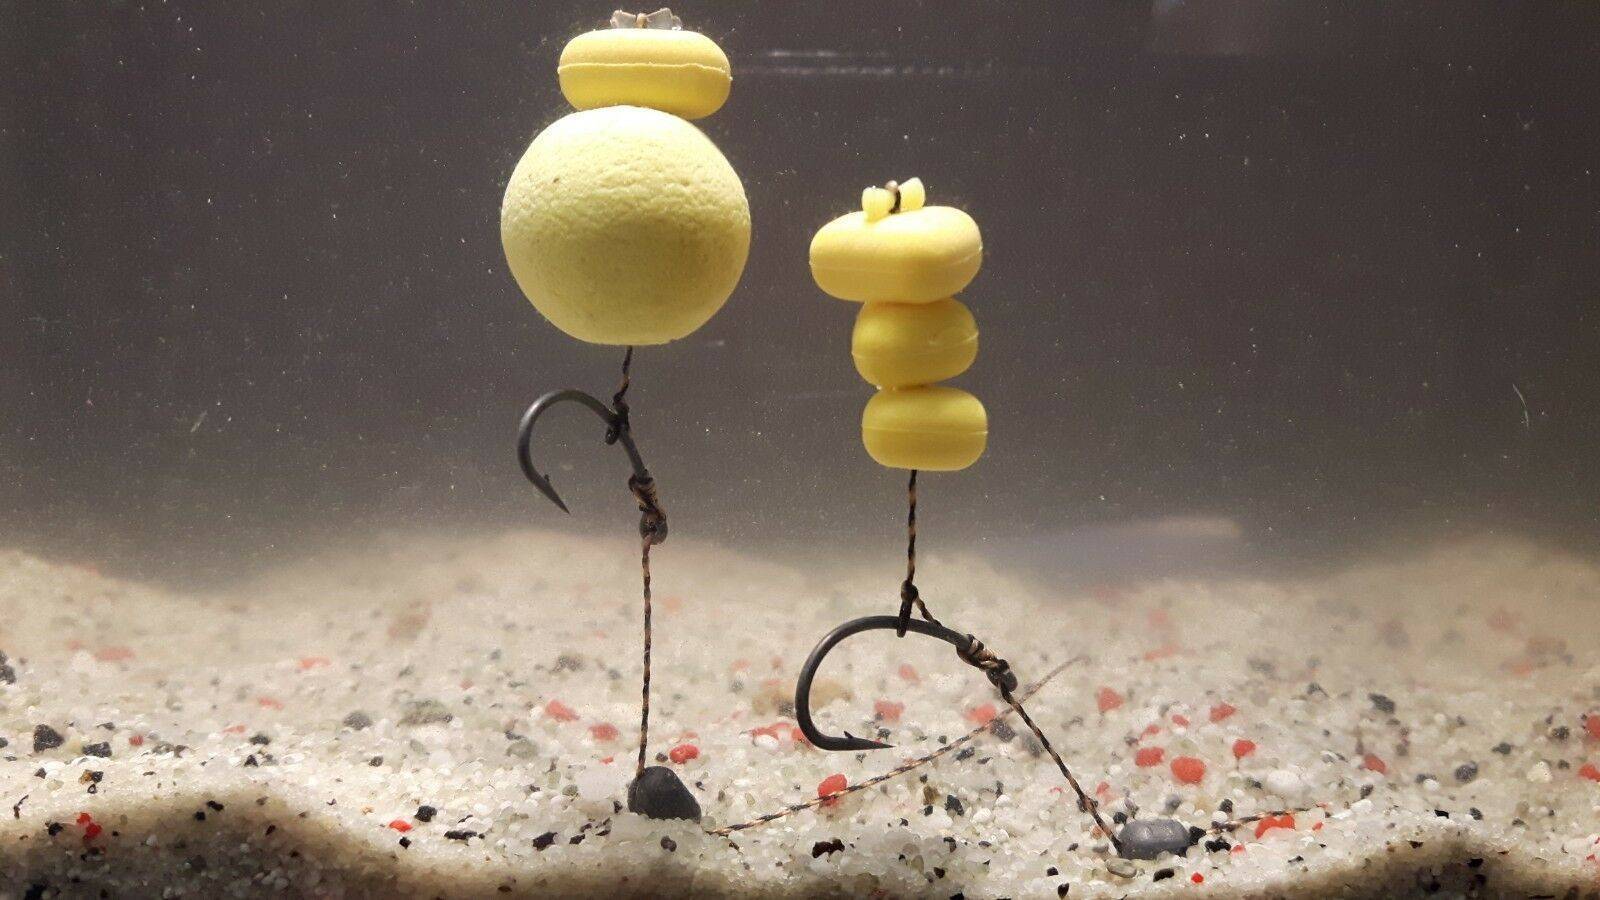 Ловля рыбы на шарики пенопласта : ароматизация и оснастка